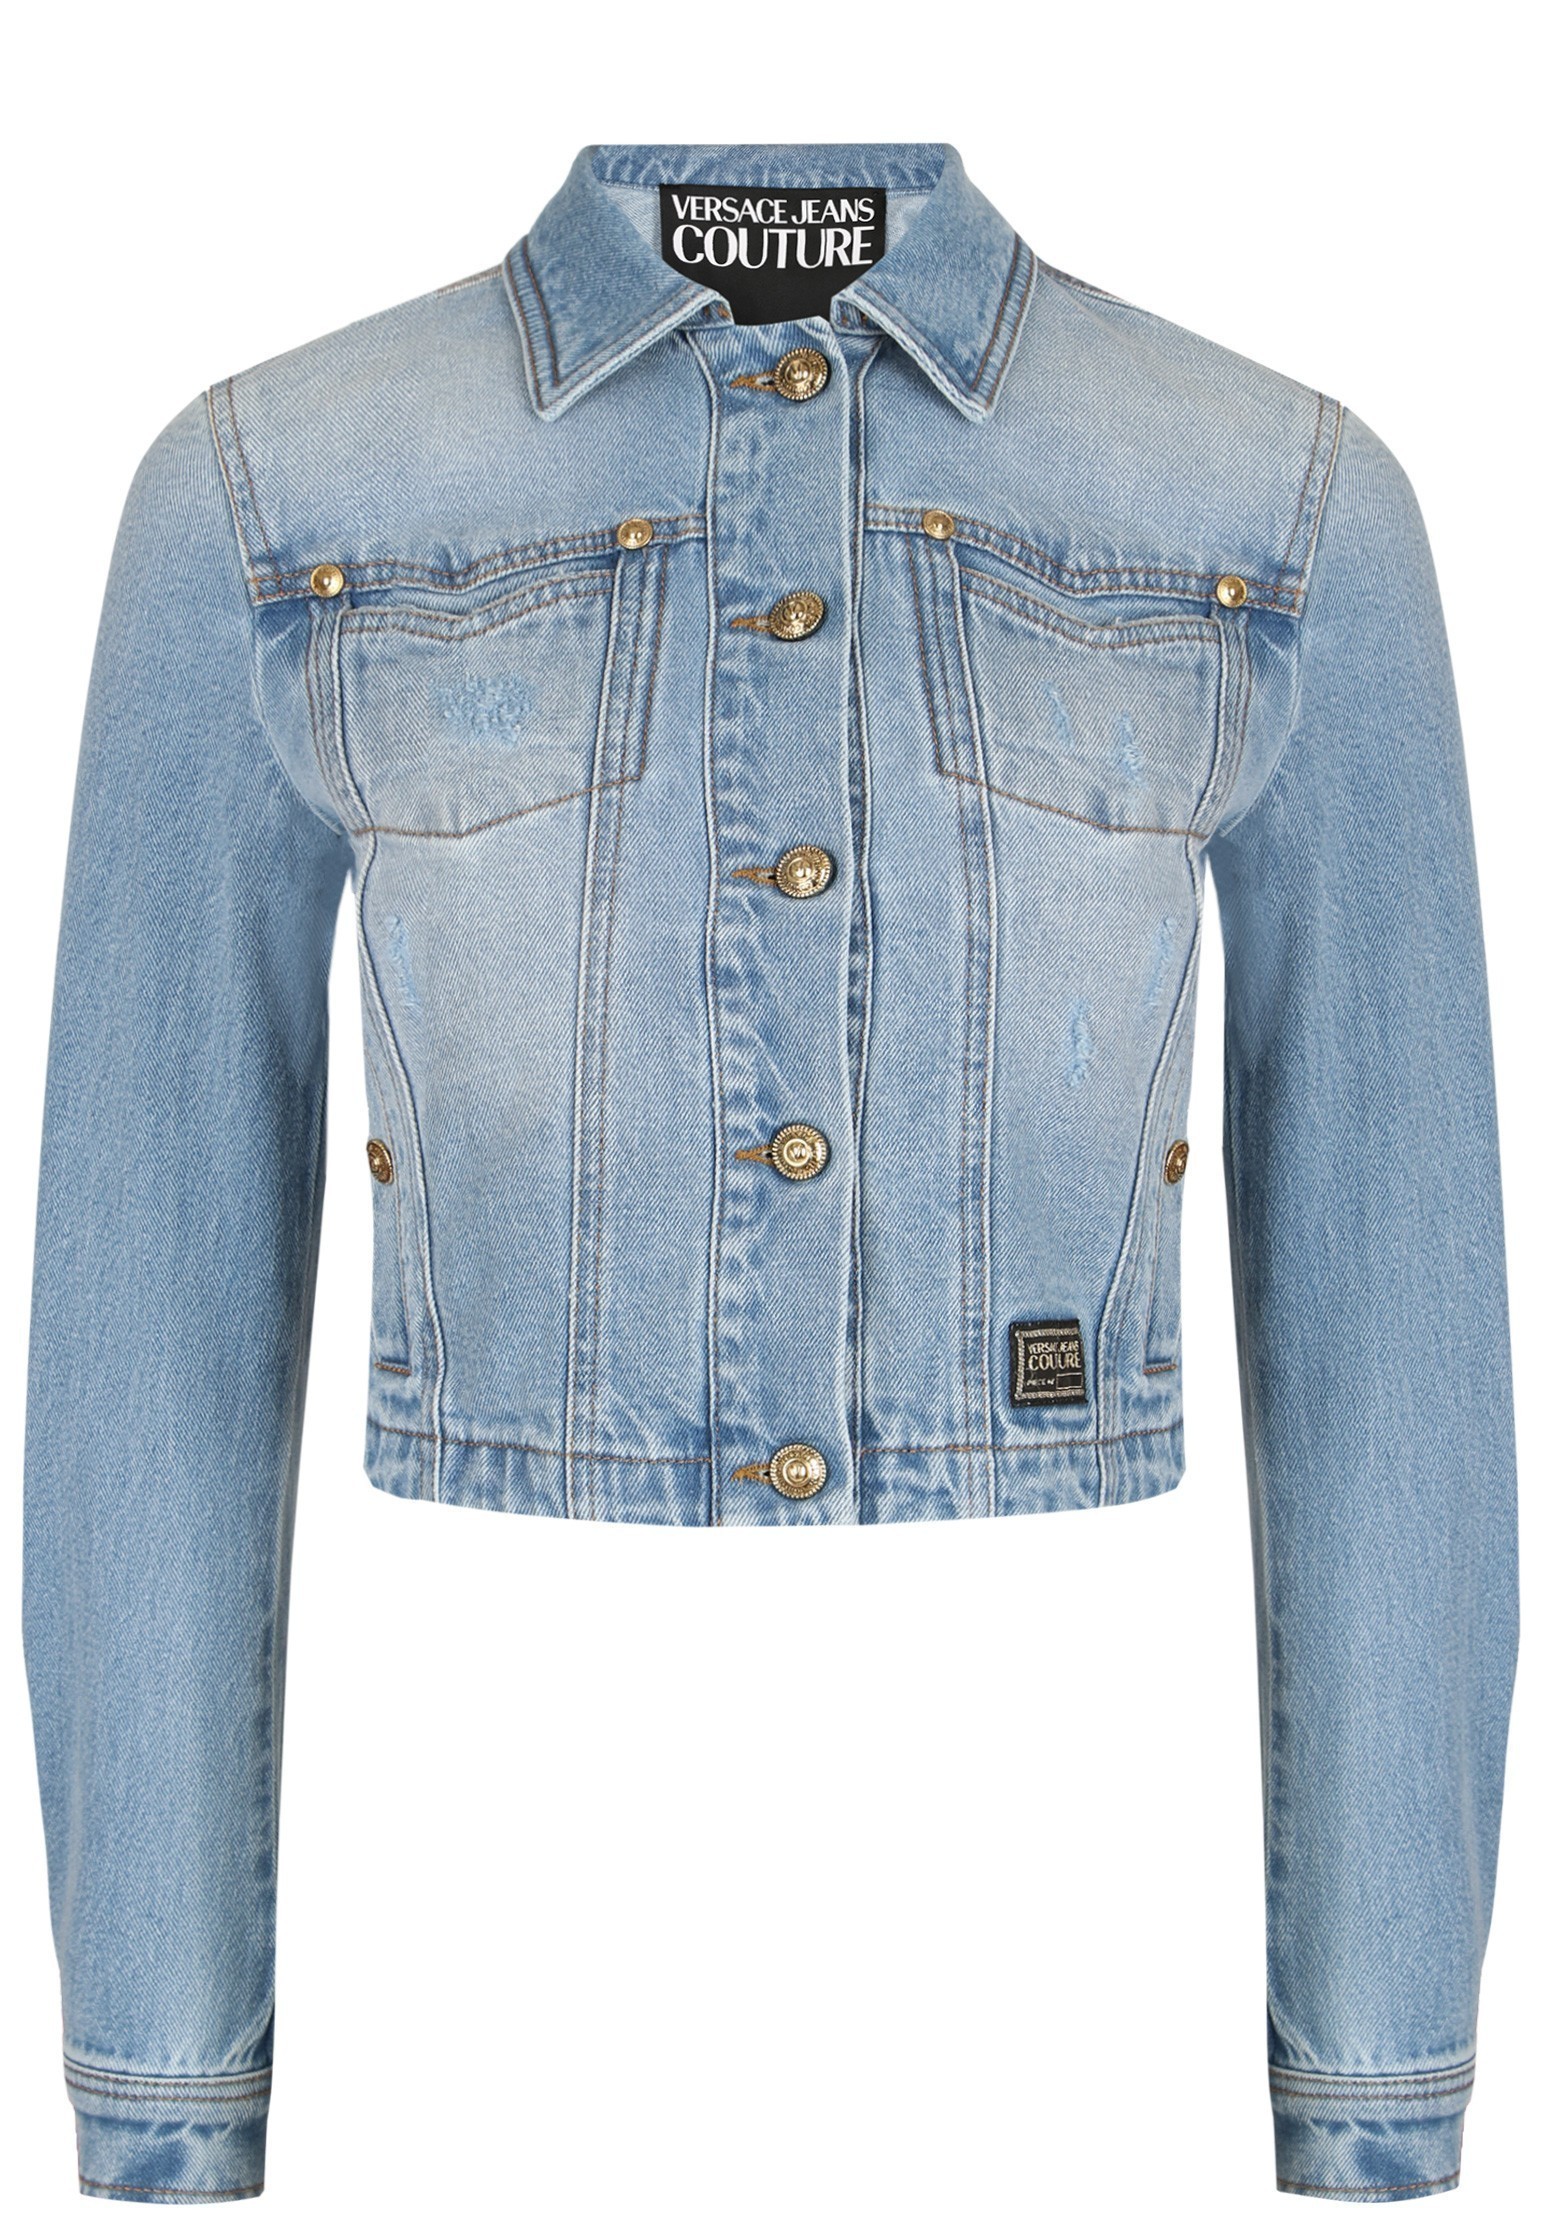 Джинсовая куртка женская Versace Jeans Couture 125347 голубая 44 IT